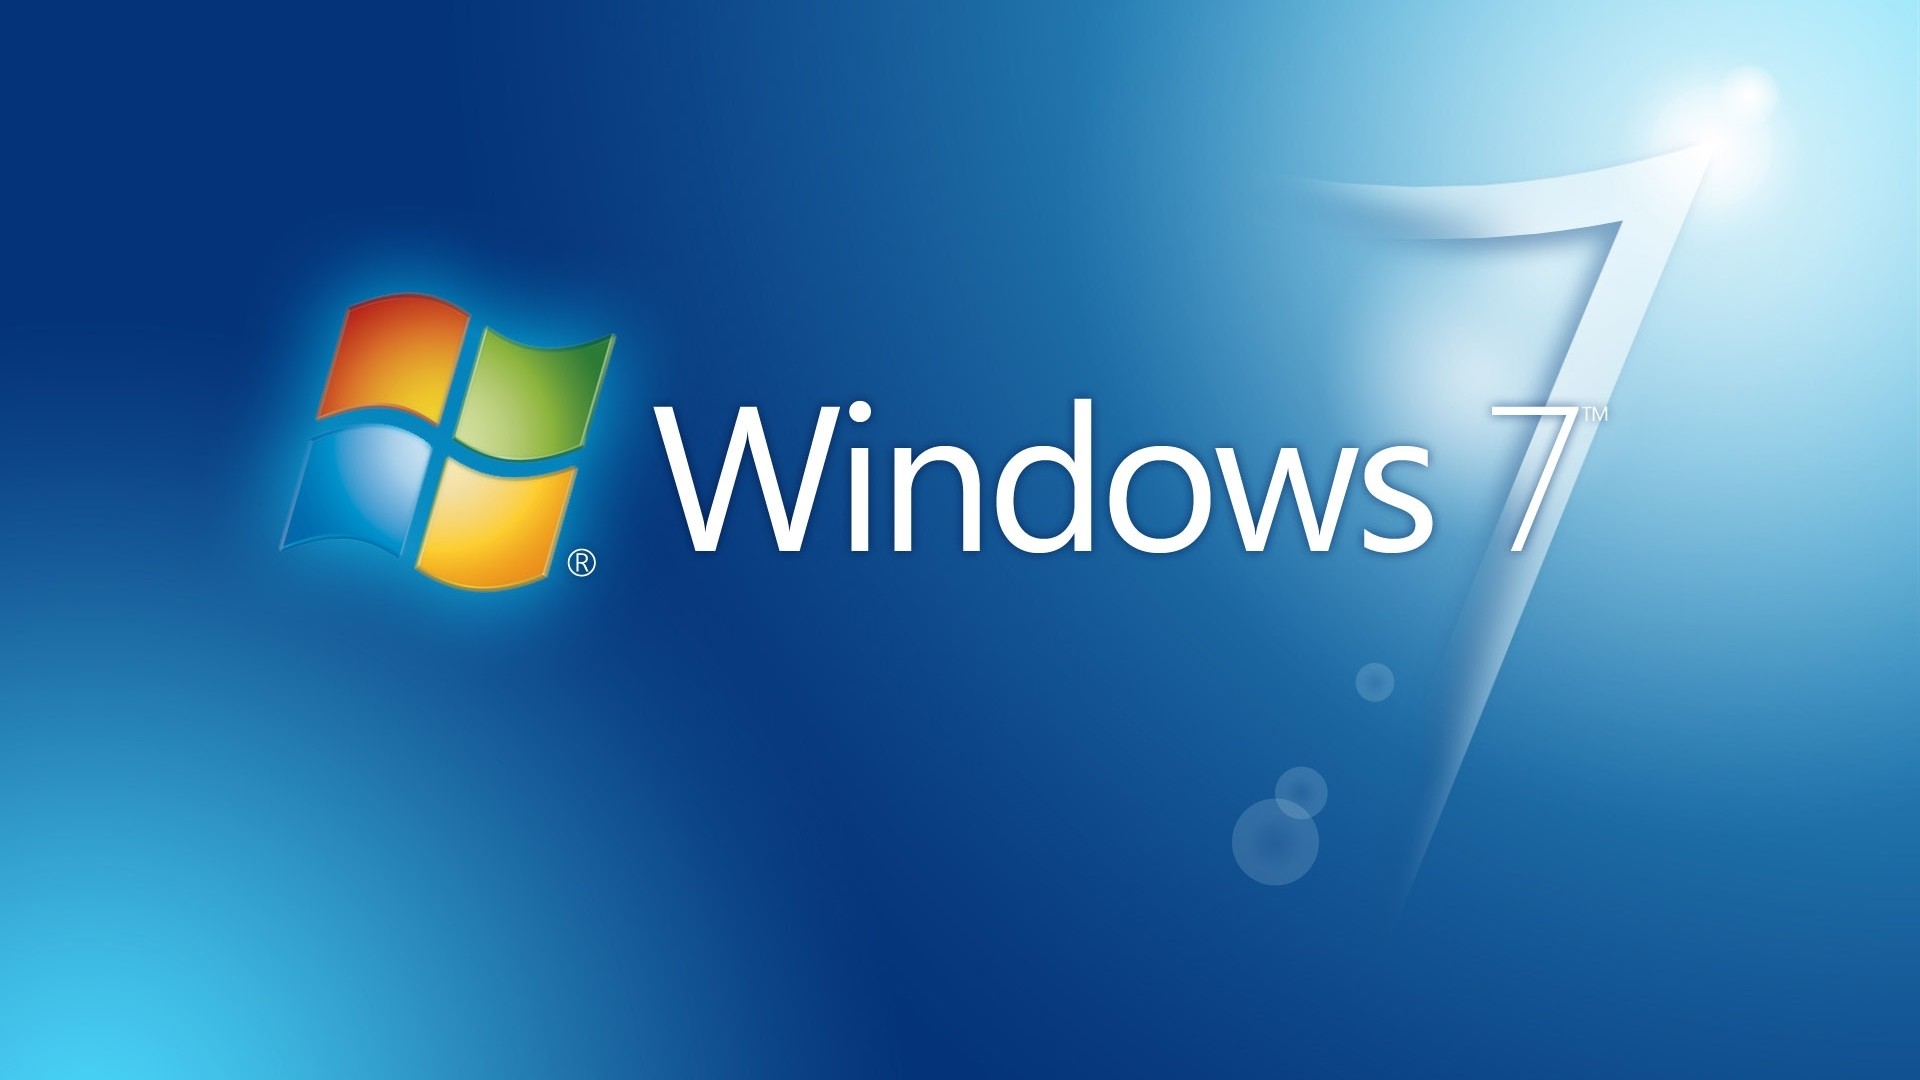 Với Windows 7 HD Backgrounds, bạn sẽ được trải nghiệm màu sắc và độ nét cao hơn bao giờ hết. Qua hình ảnh liên quan, bạn sẽ tìm thấy những bức hình nền đẹp và sống động cho máy tính của mình. 